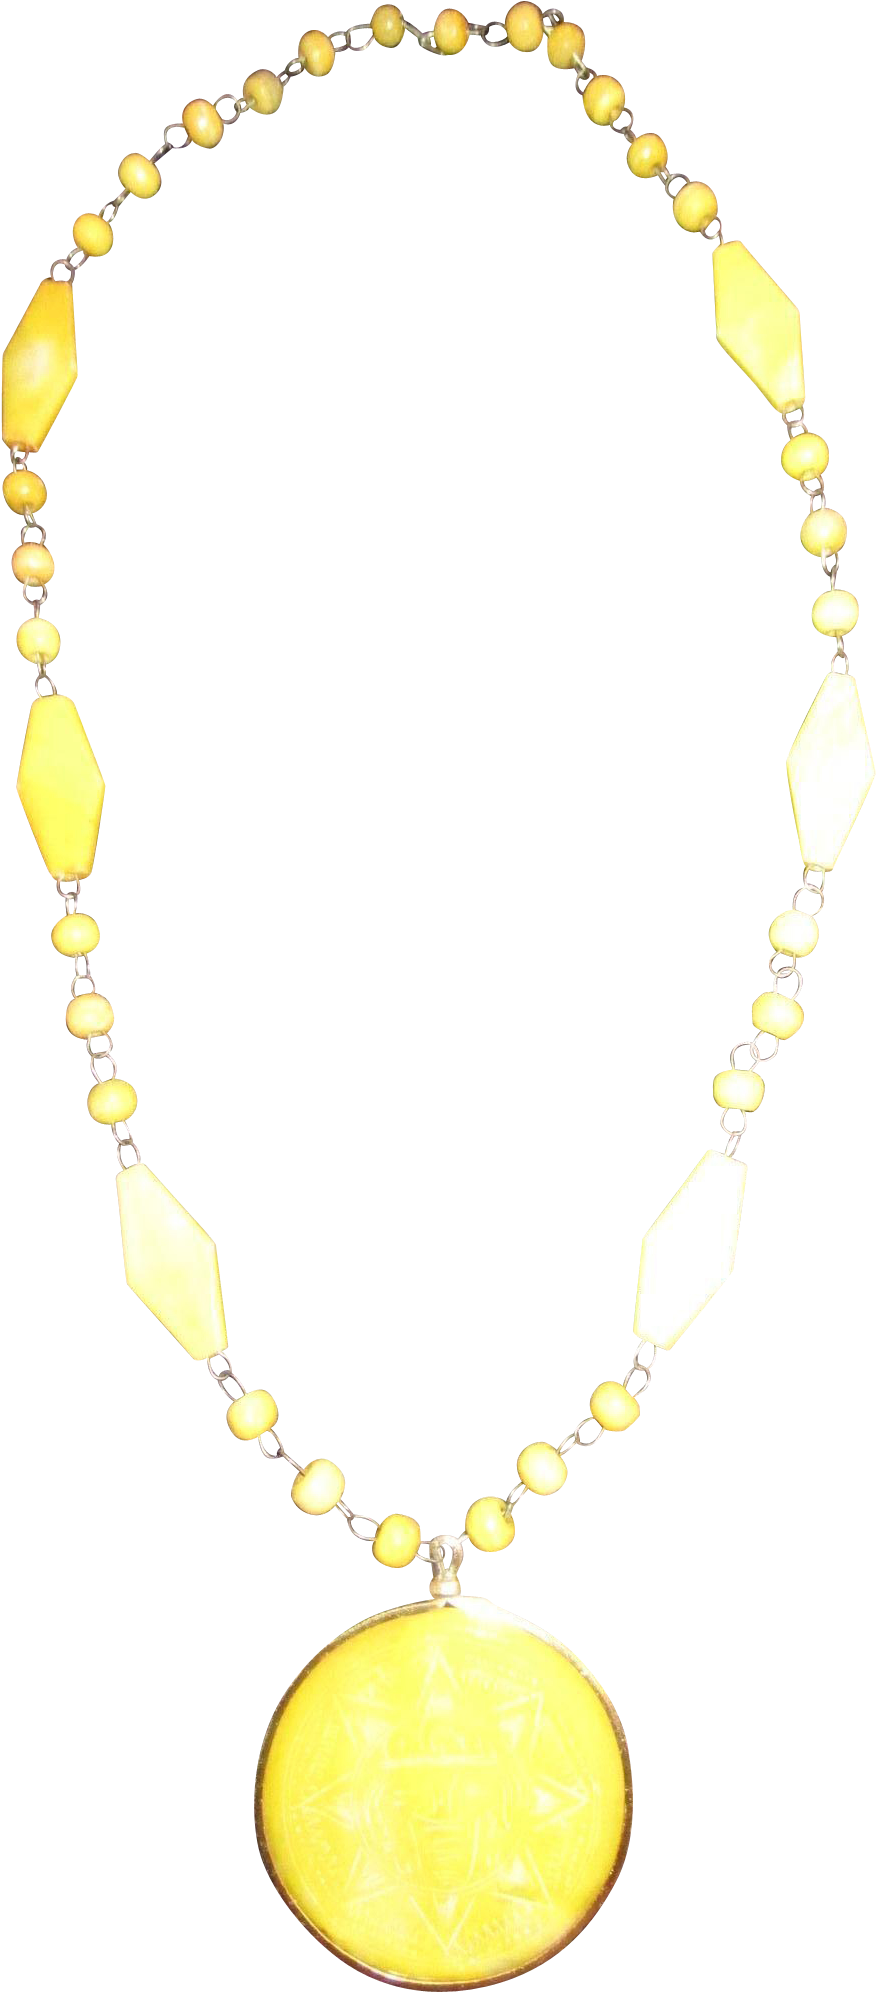 Lemon Yellow Sun Pendant Necklace Plastics Medallion - Necklace (1991x1991), Png Download